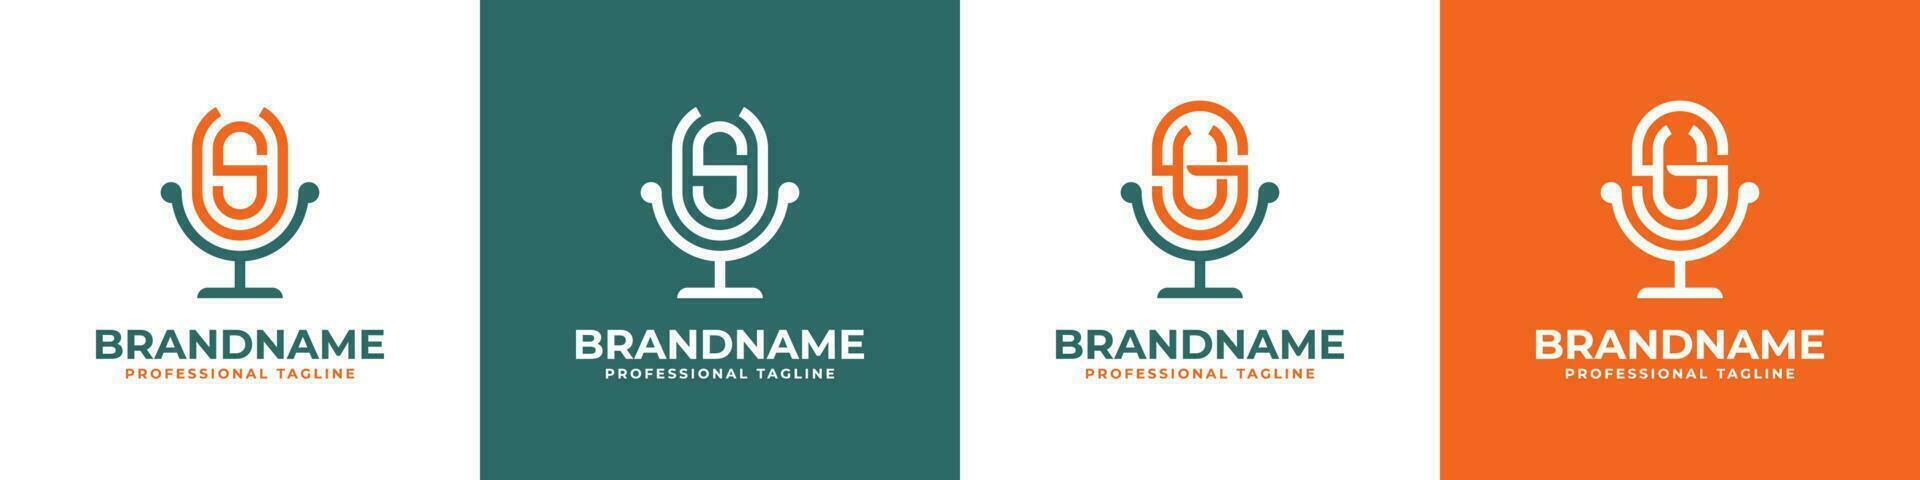 brev su eller oss podcast logotyp, lämplig för några företag relaterad till mikrofon med su eller oss initialer. vektor